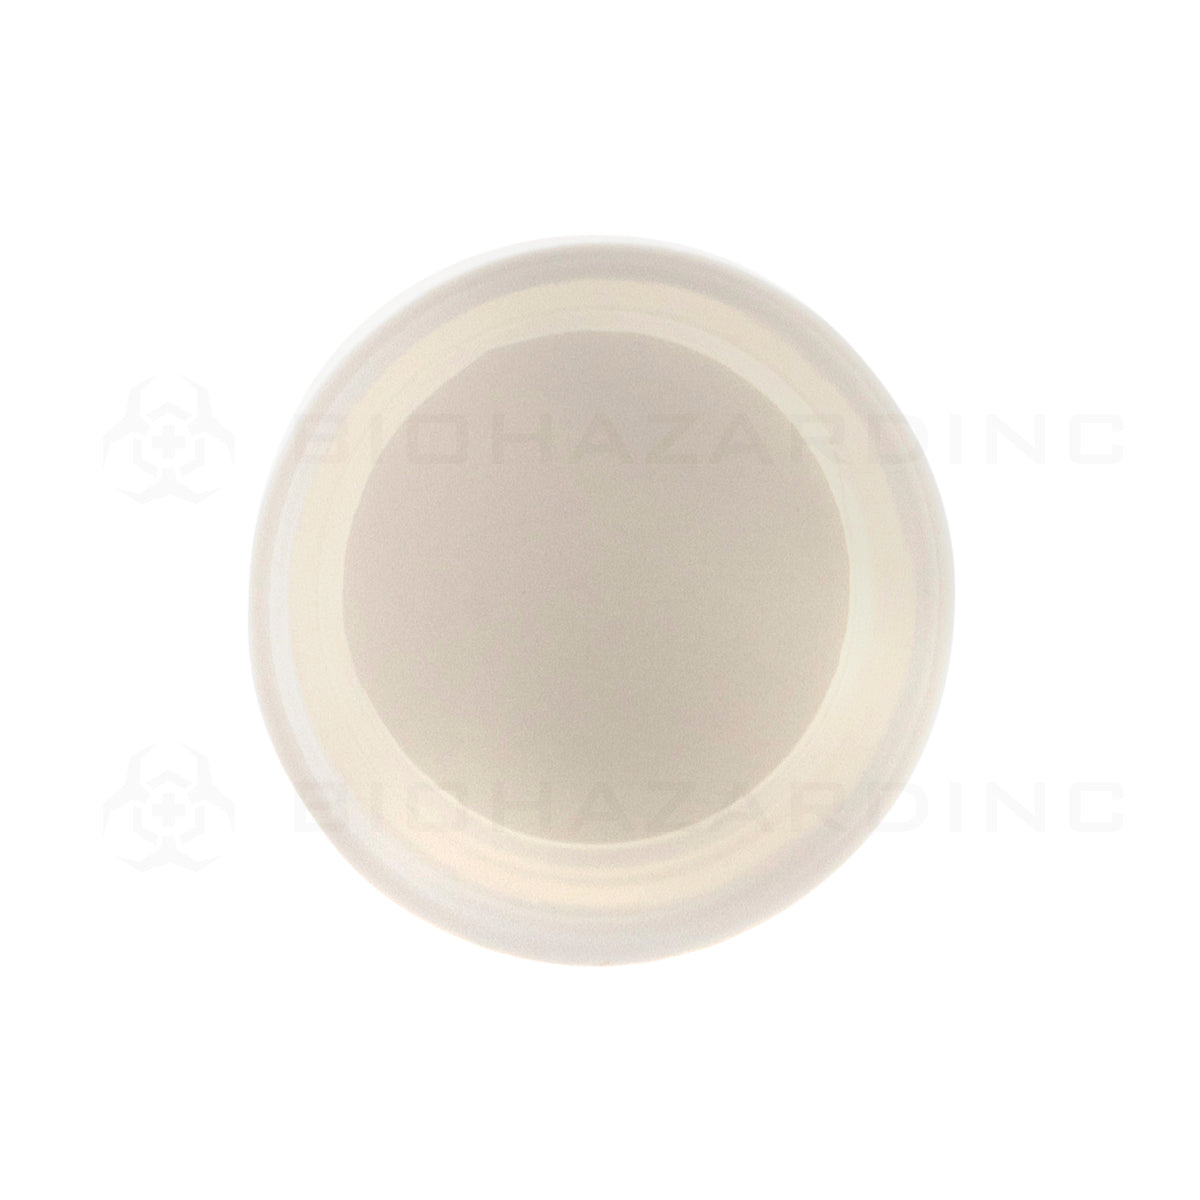 Child Resistant Cap | Plastic Cap | 22mm - Matte White - 144 Count Child Resistant Cap Biohazard Inc   